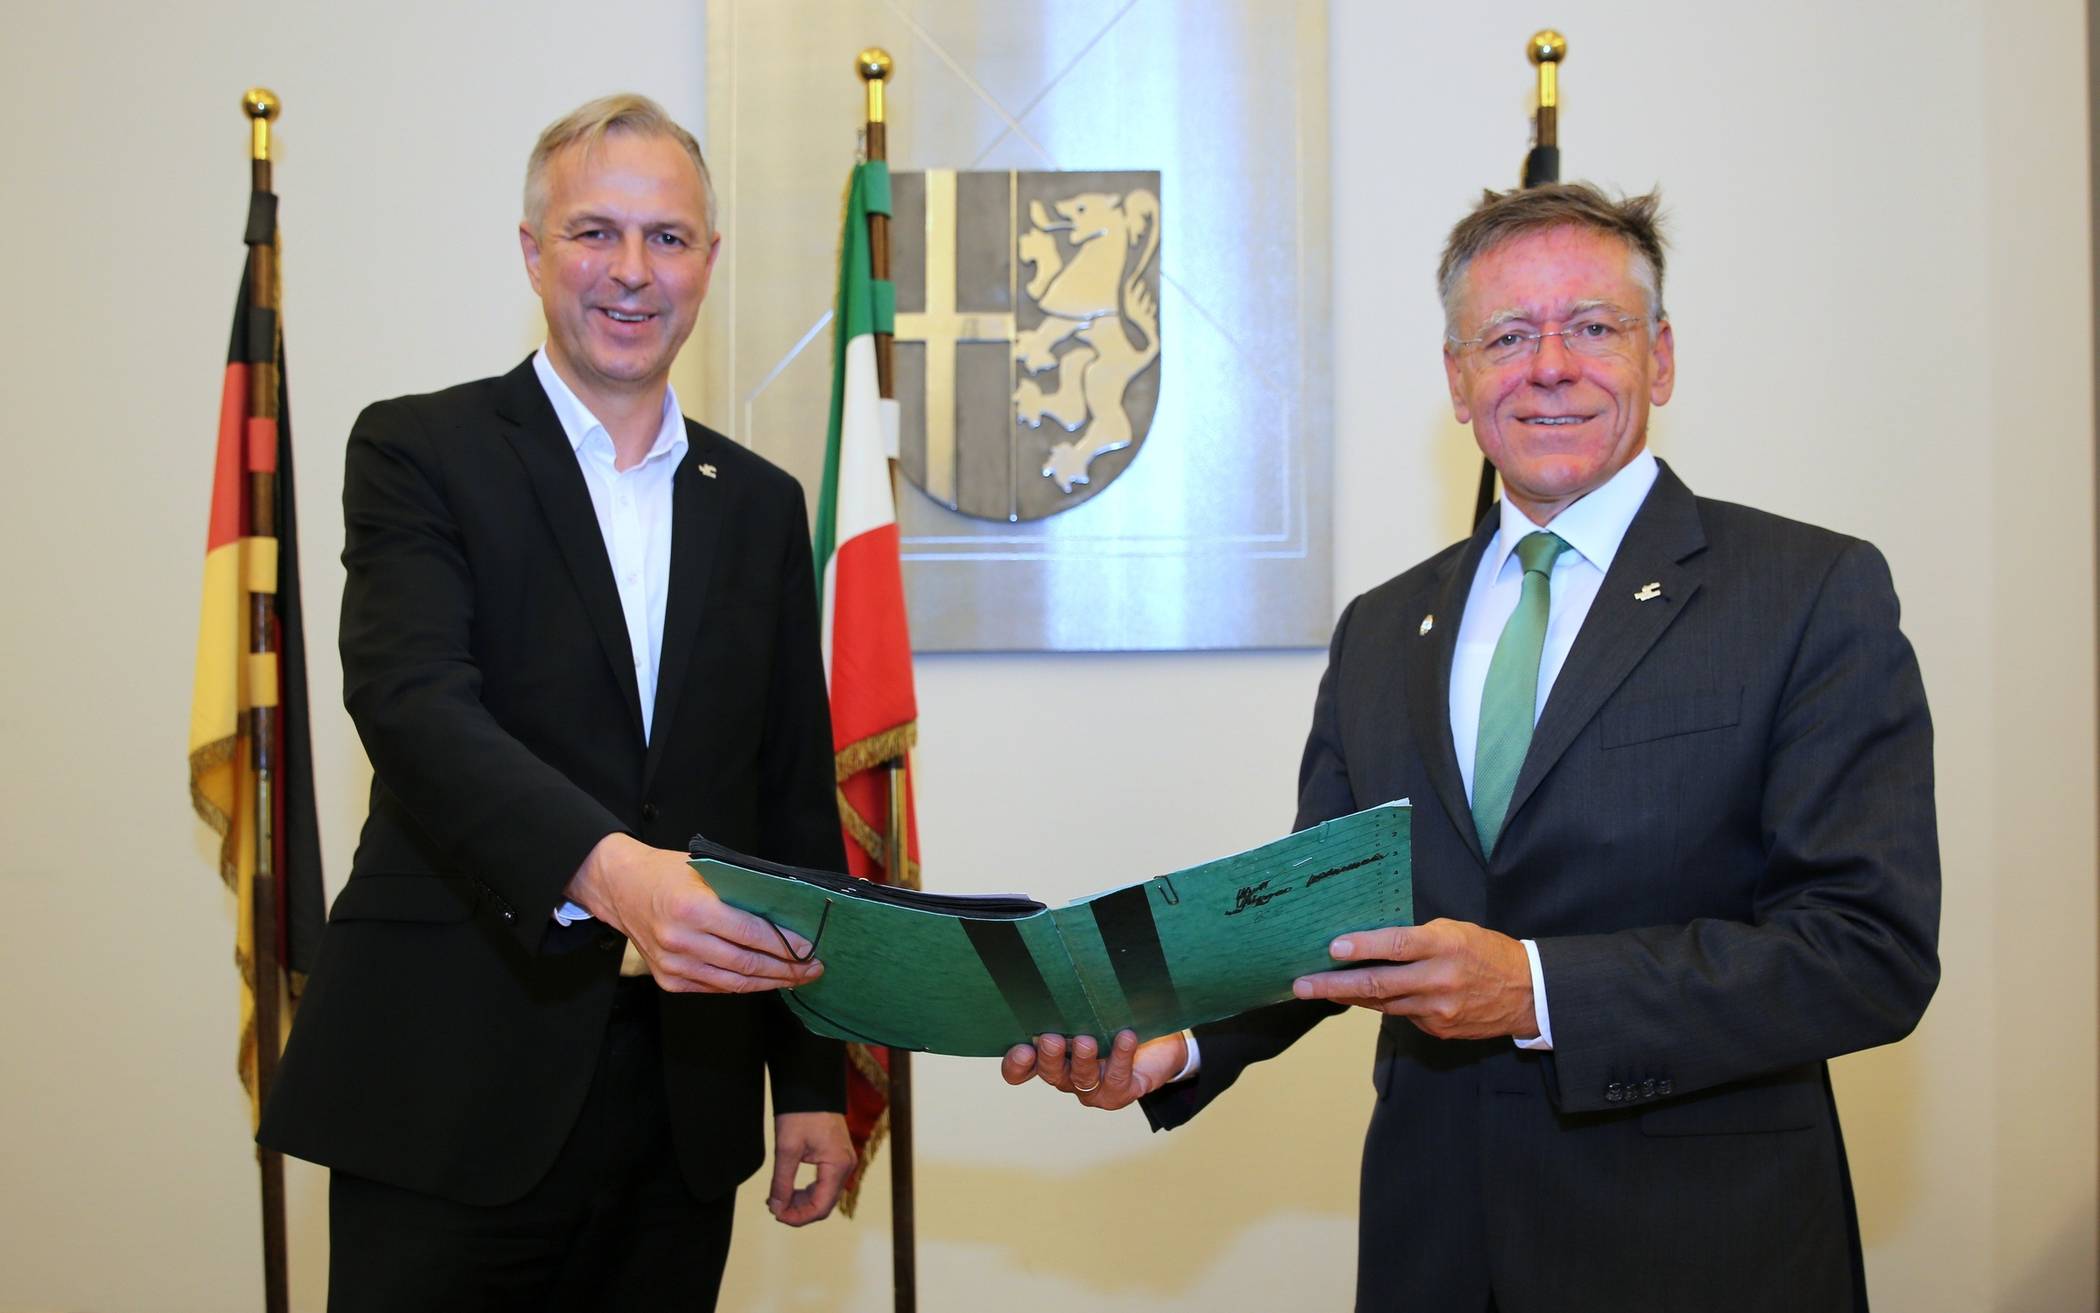  Wahl angenommen, Erklärung unterzeichnet: Landrat Hans-Jürgen Petrauschke (rechts) mit Kreisdirektor und Kreiswahlleiter Dirk Brügge im Kreissitzungssaal in Grevenbroich. 